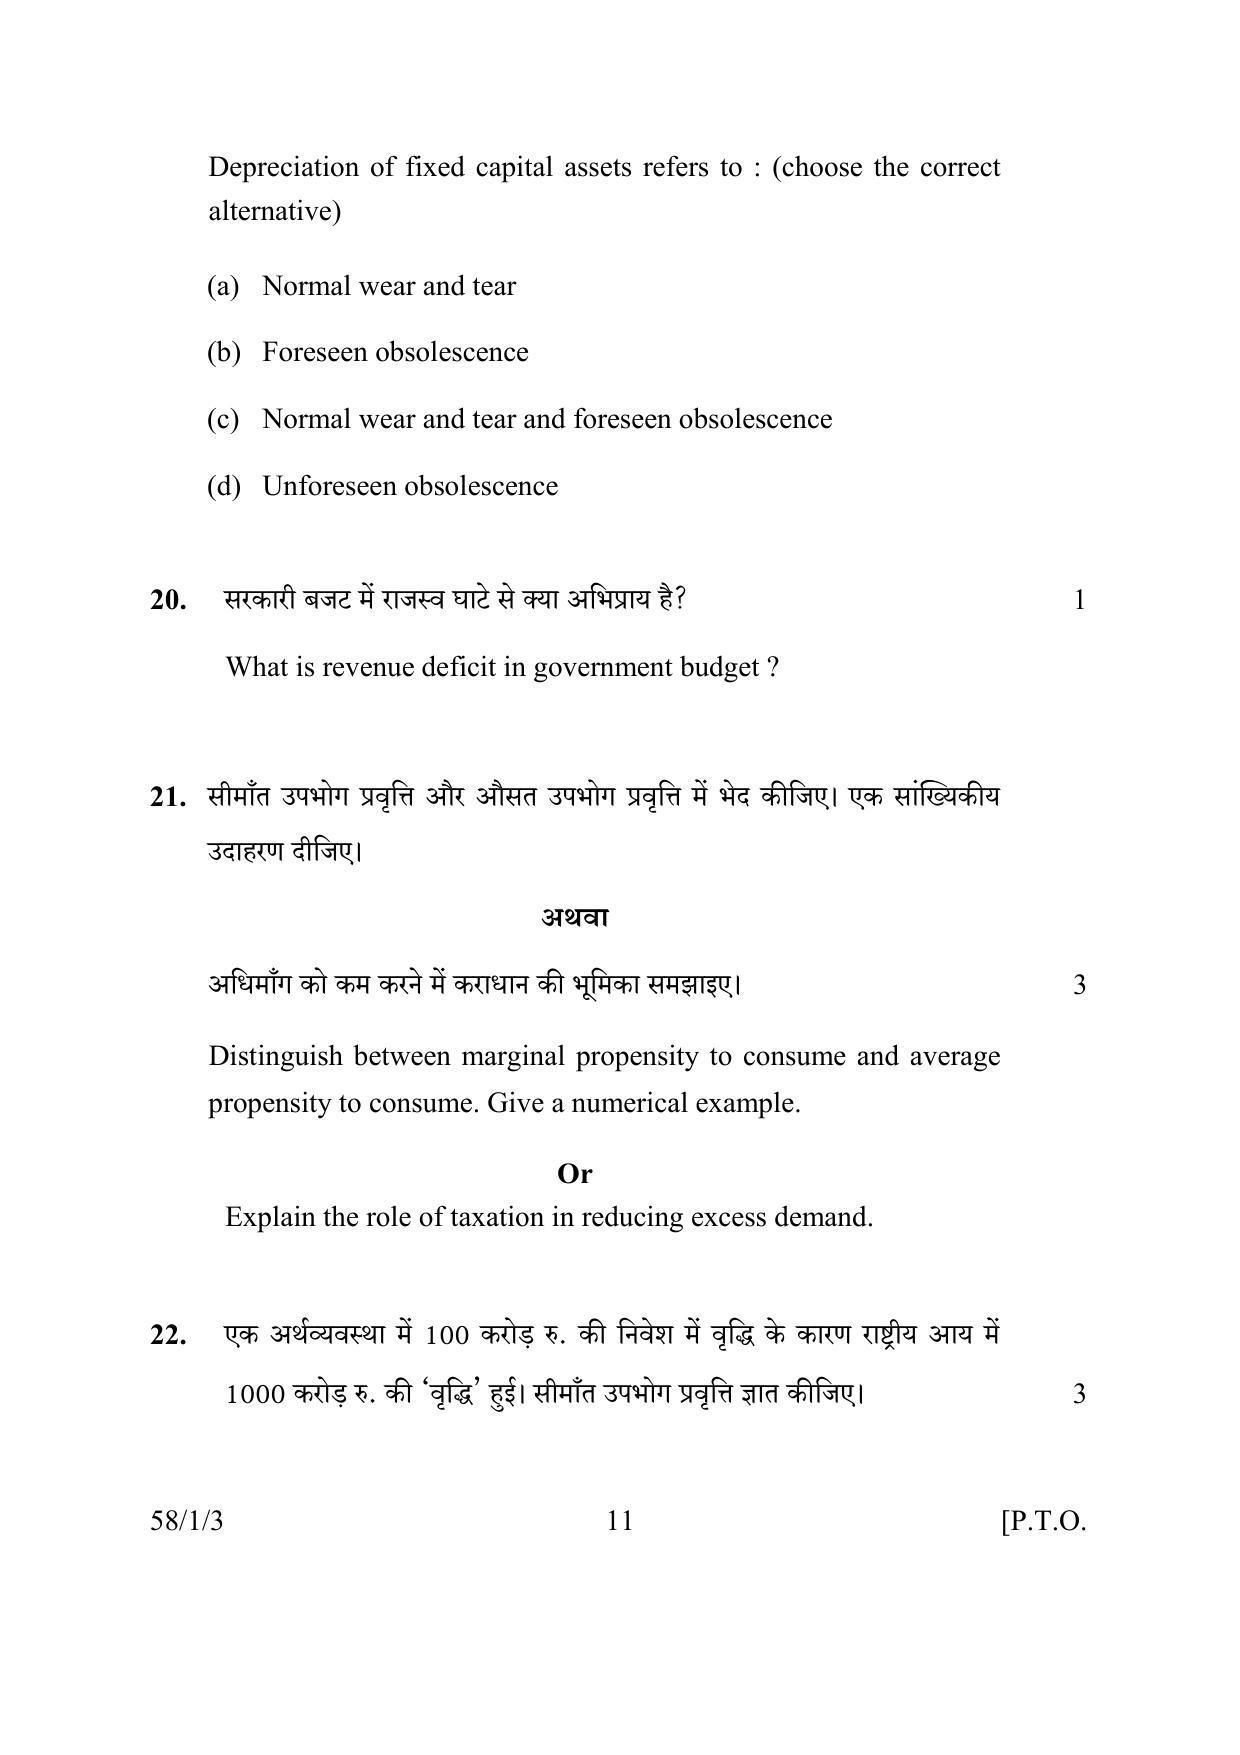 CBSE Class 12 58-1-3 ECONOMICS 2016 Question Paper - Page 11